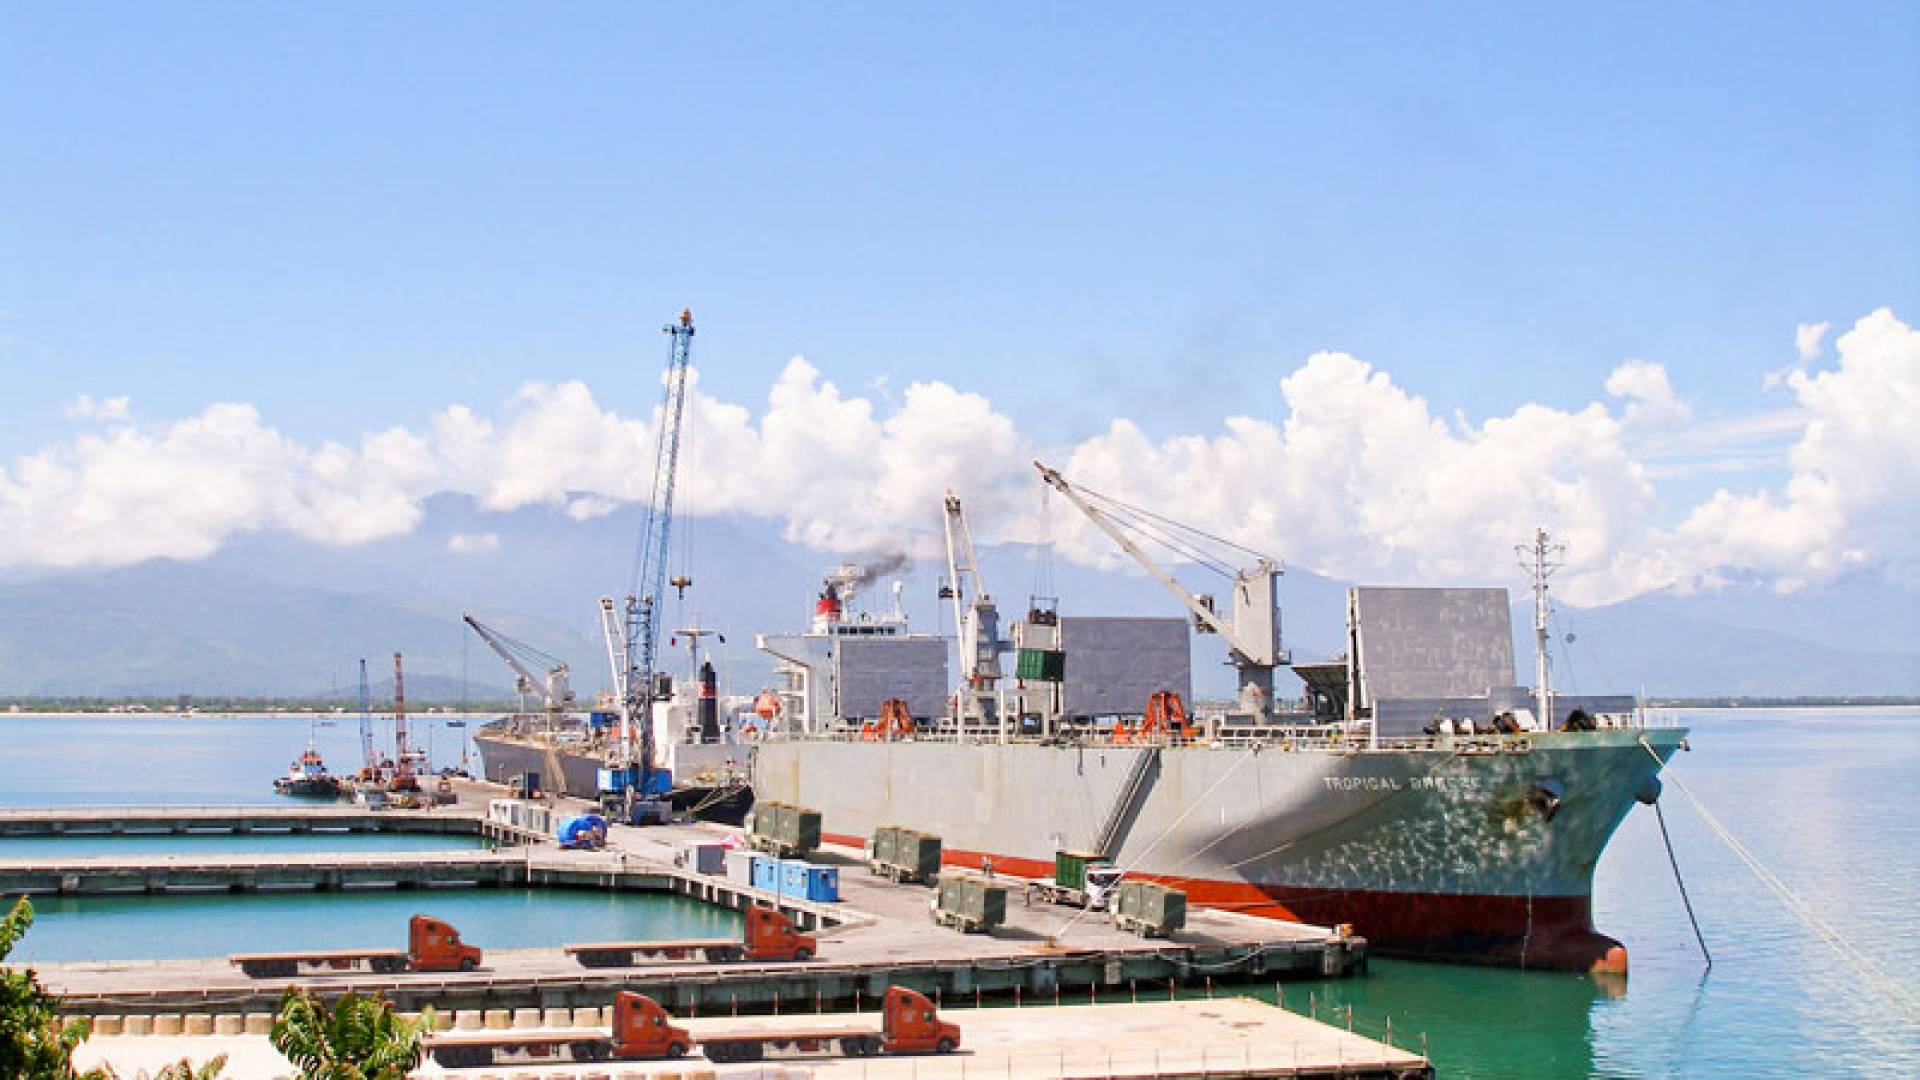 Quản chặt việc thu gom chất thải từ tàu tại cảng biển Thừa Thiên Huế- Ảnh 1.